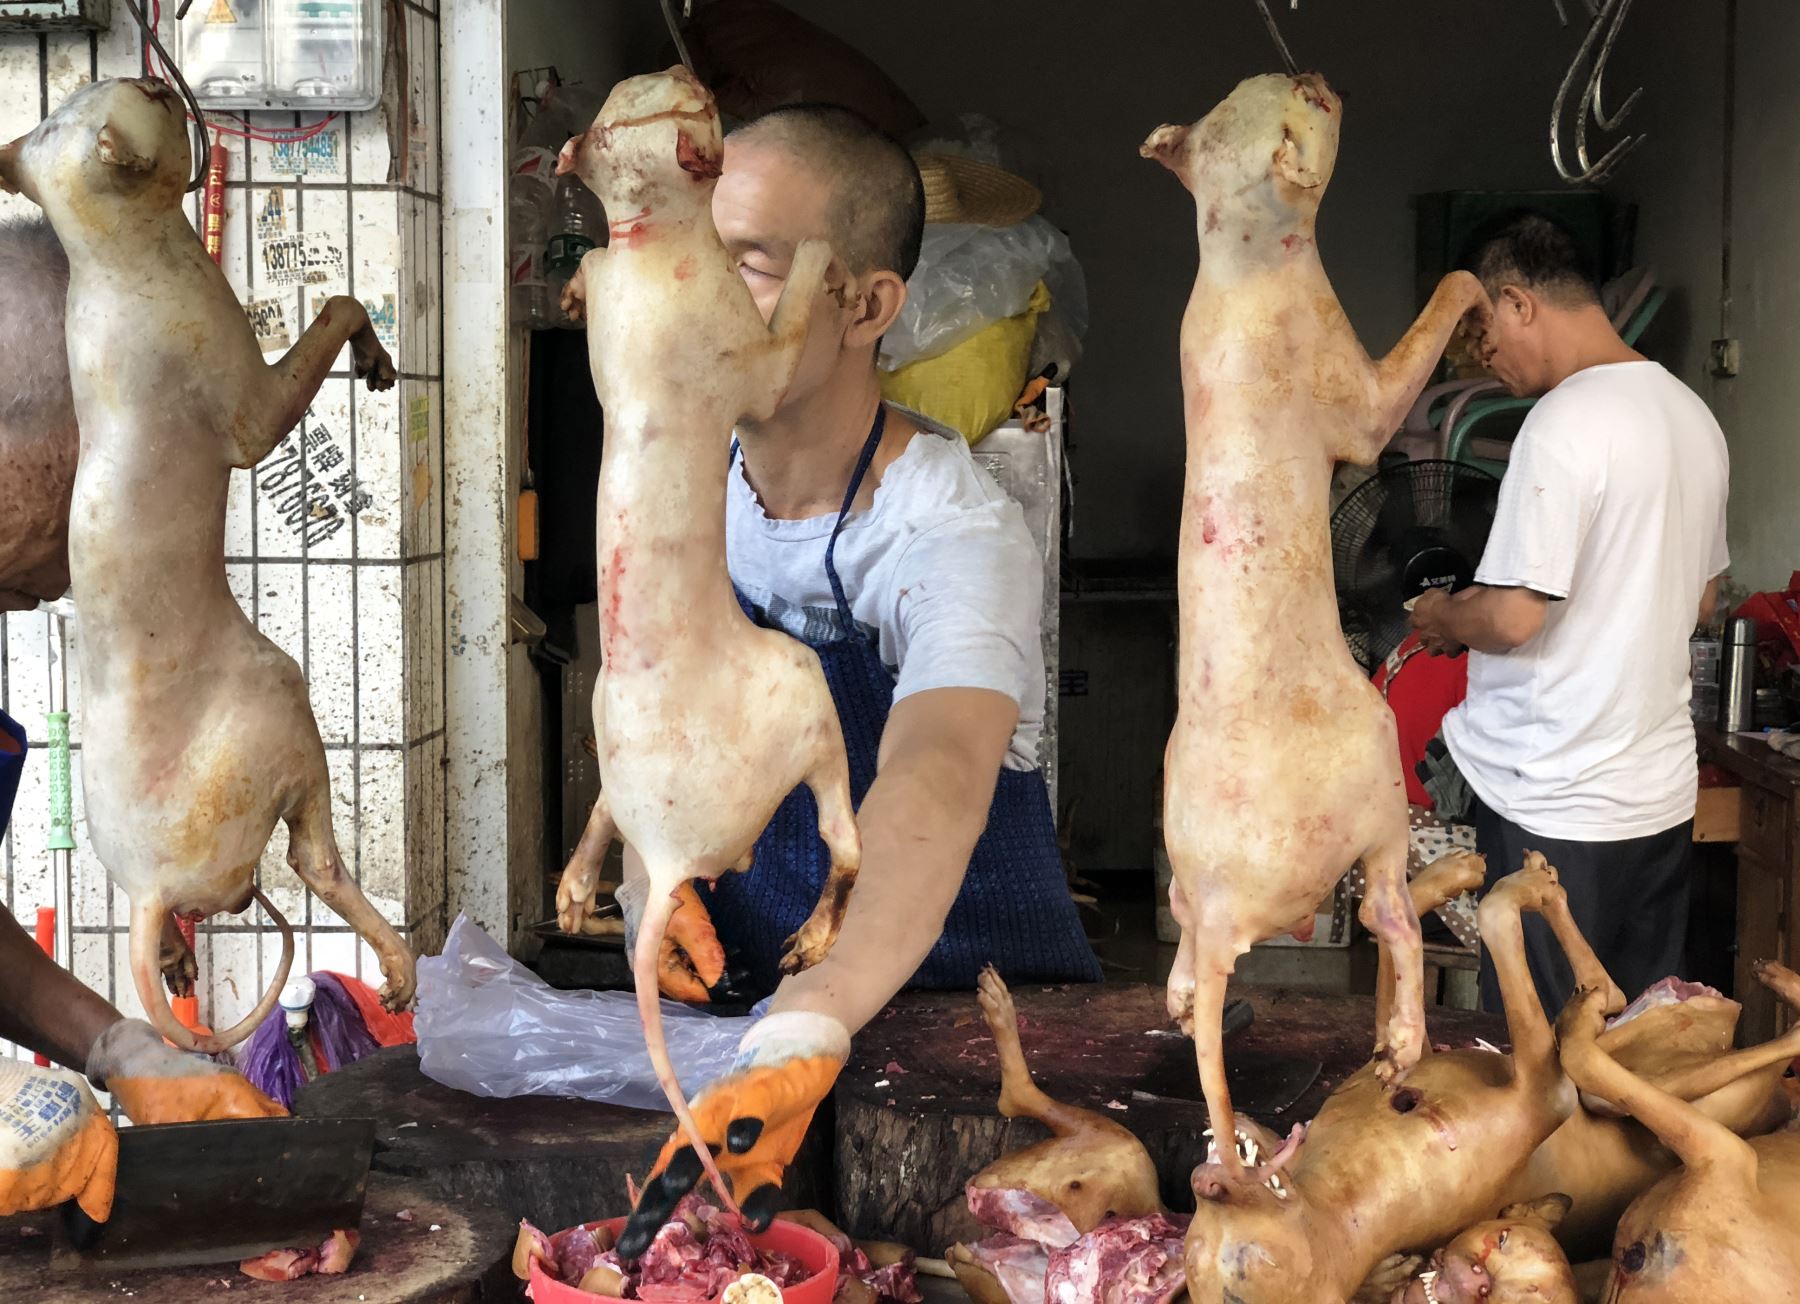 La fiesta de Yulín es "inhumana y bárbara", afirman los defensores de los animales. Foto: AFP